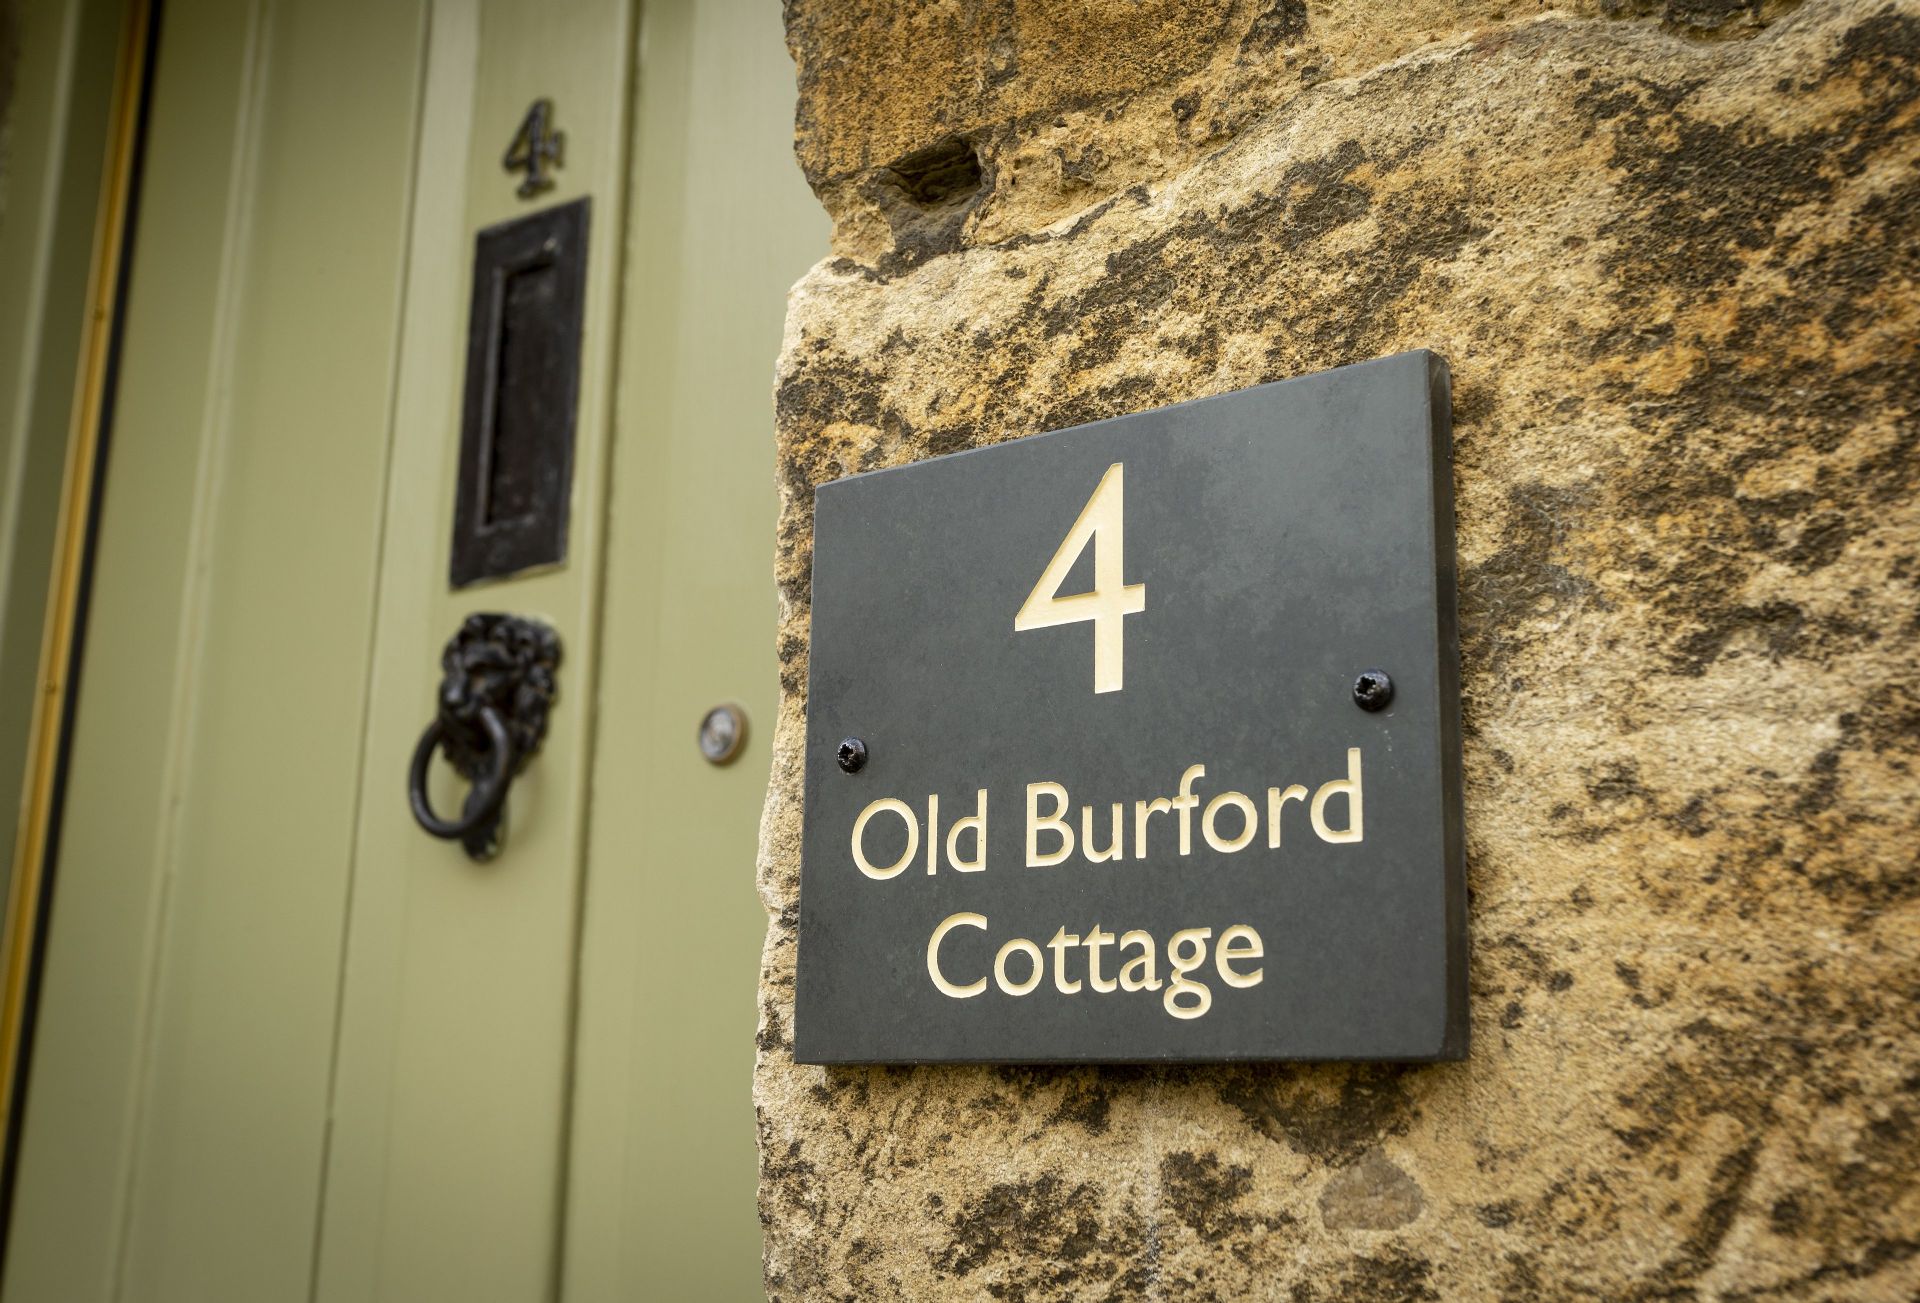 Old Burford Cottage